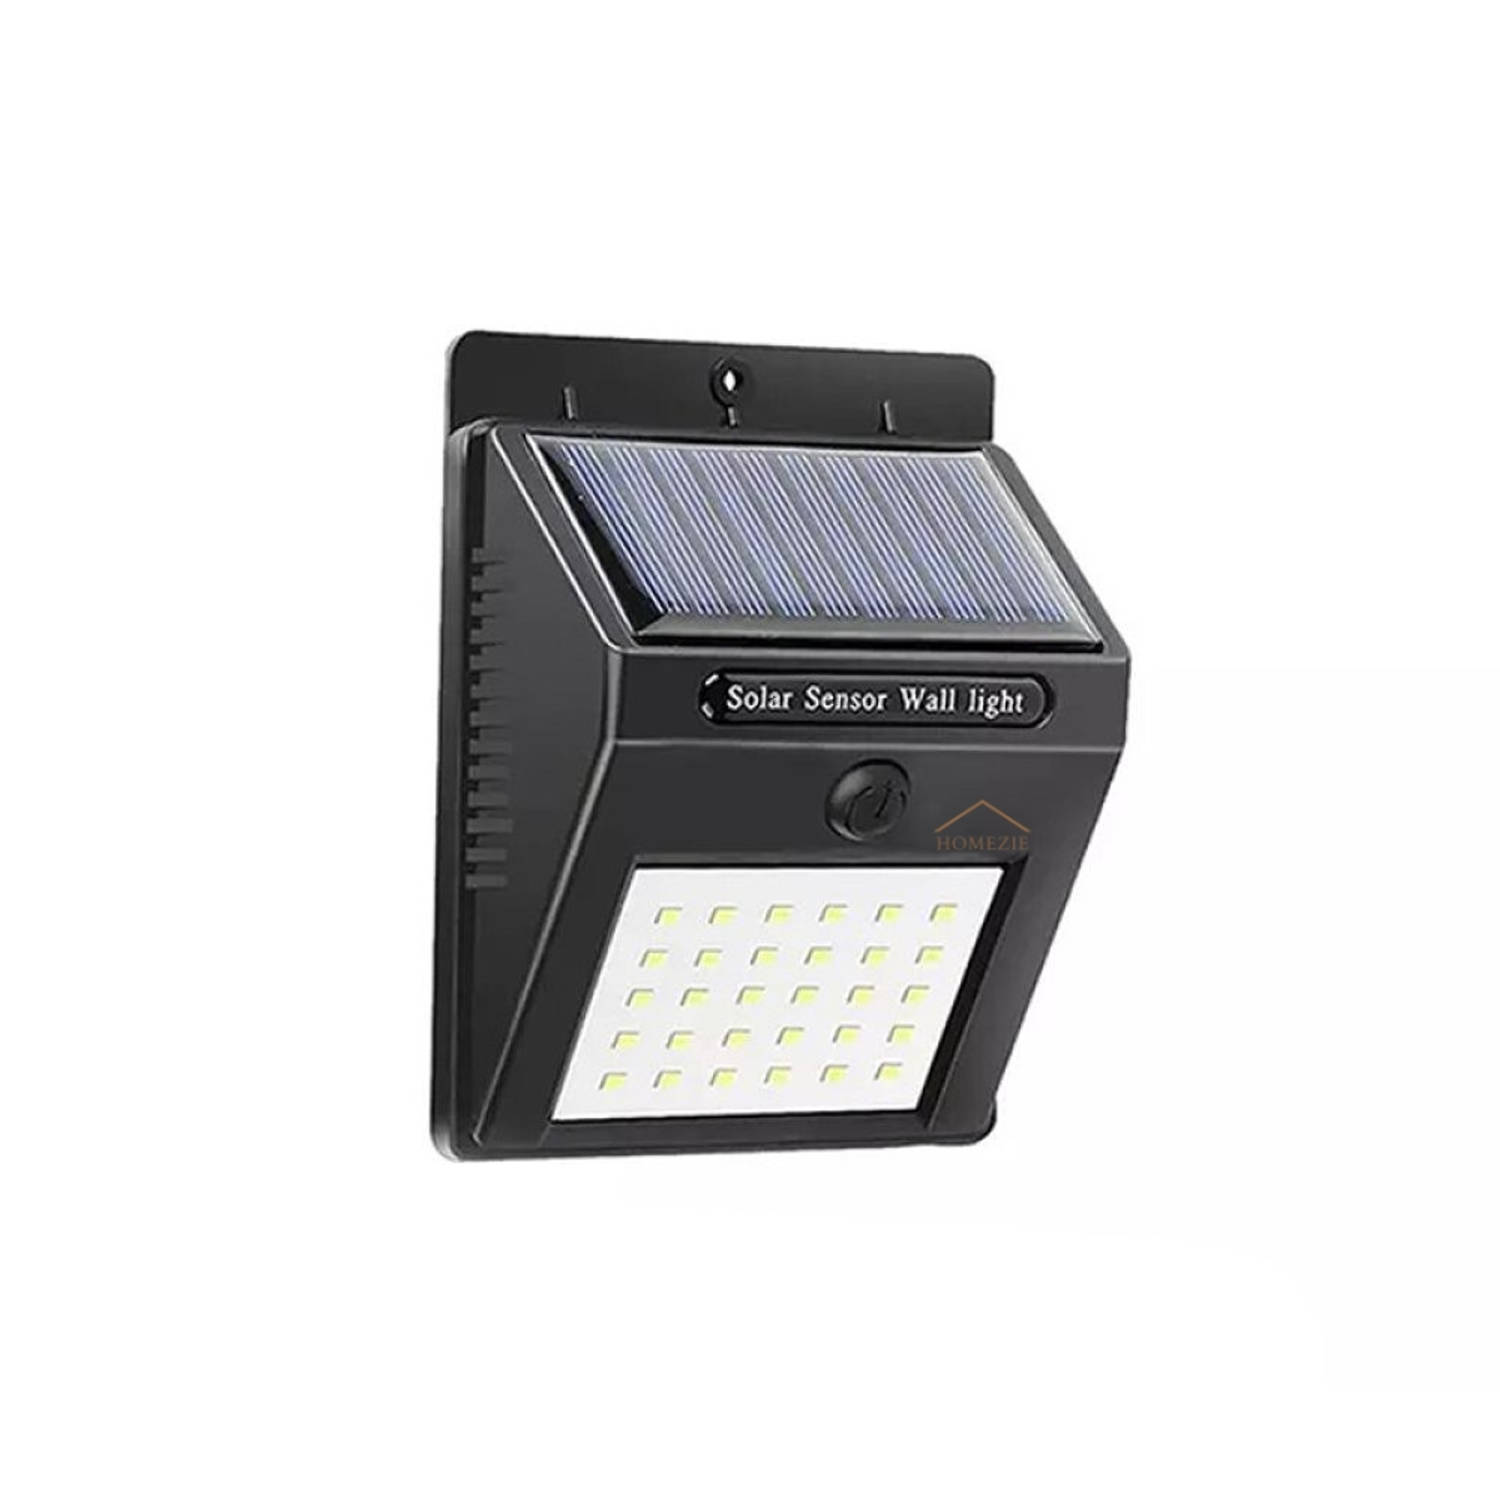 Homezie Solar Buitenlamp met bewegingssensor - Op Zonne-energie - IP65 Waterdicht - Solar tuinverlichting